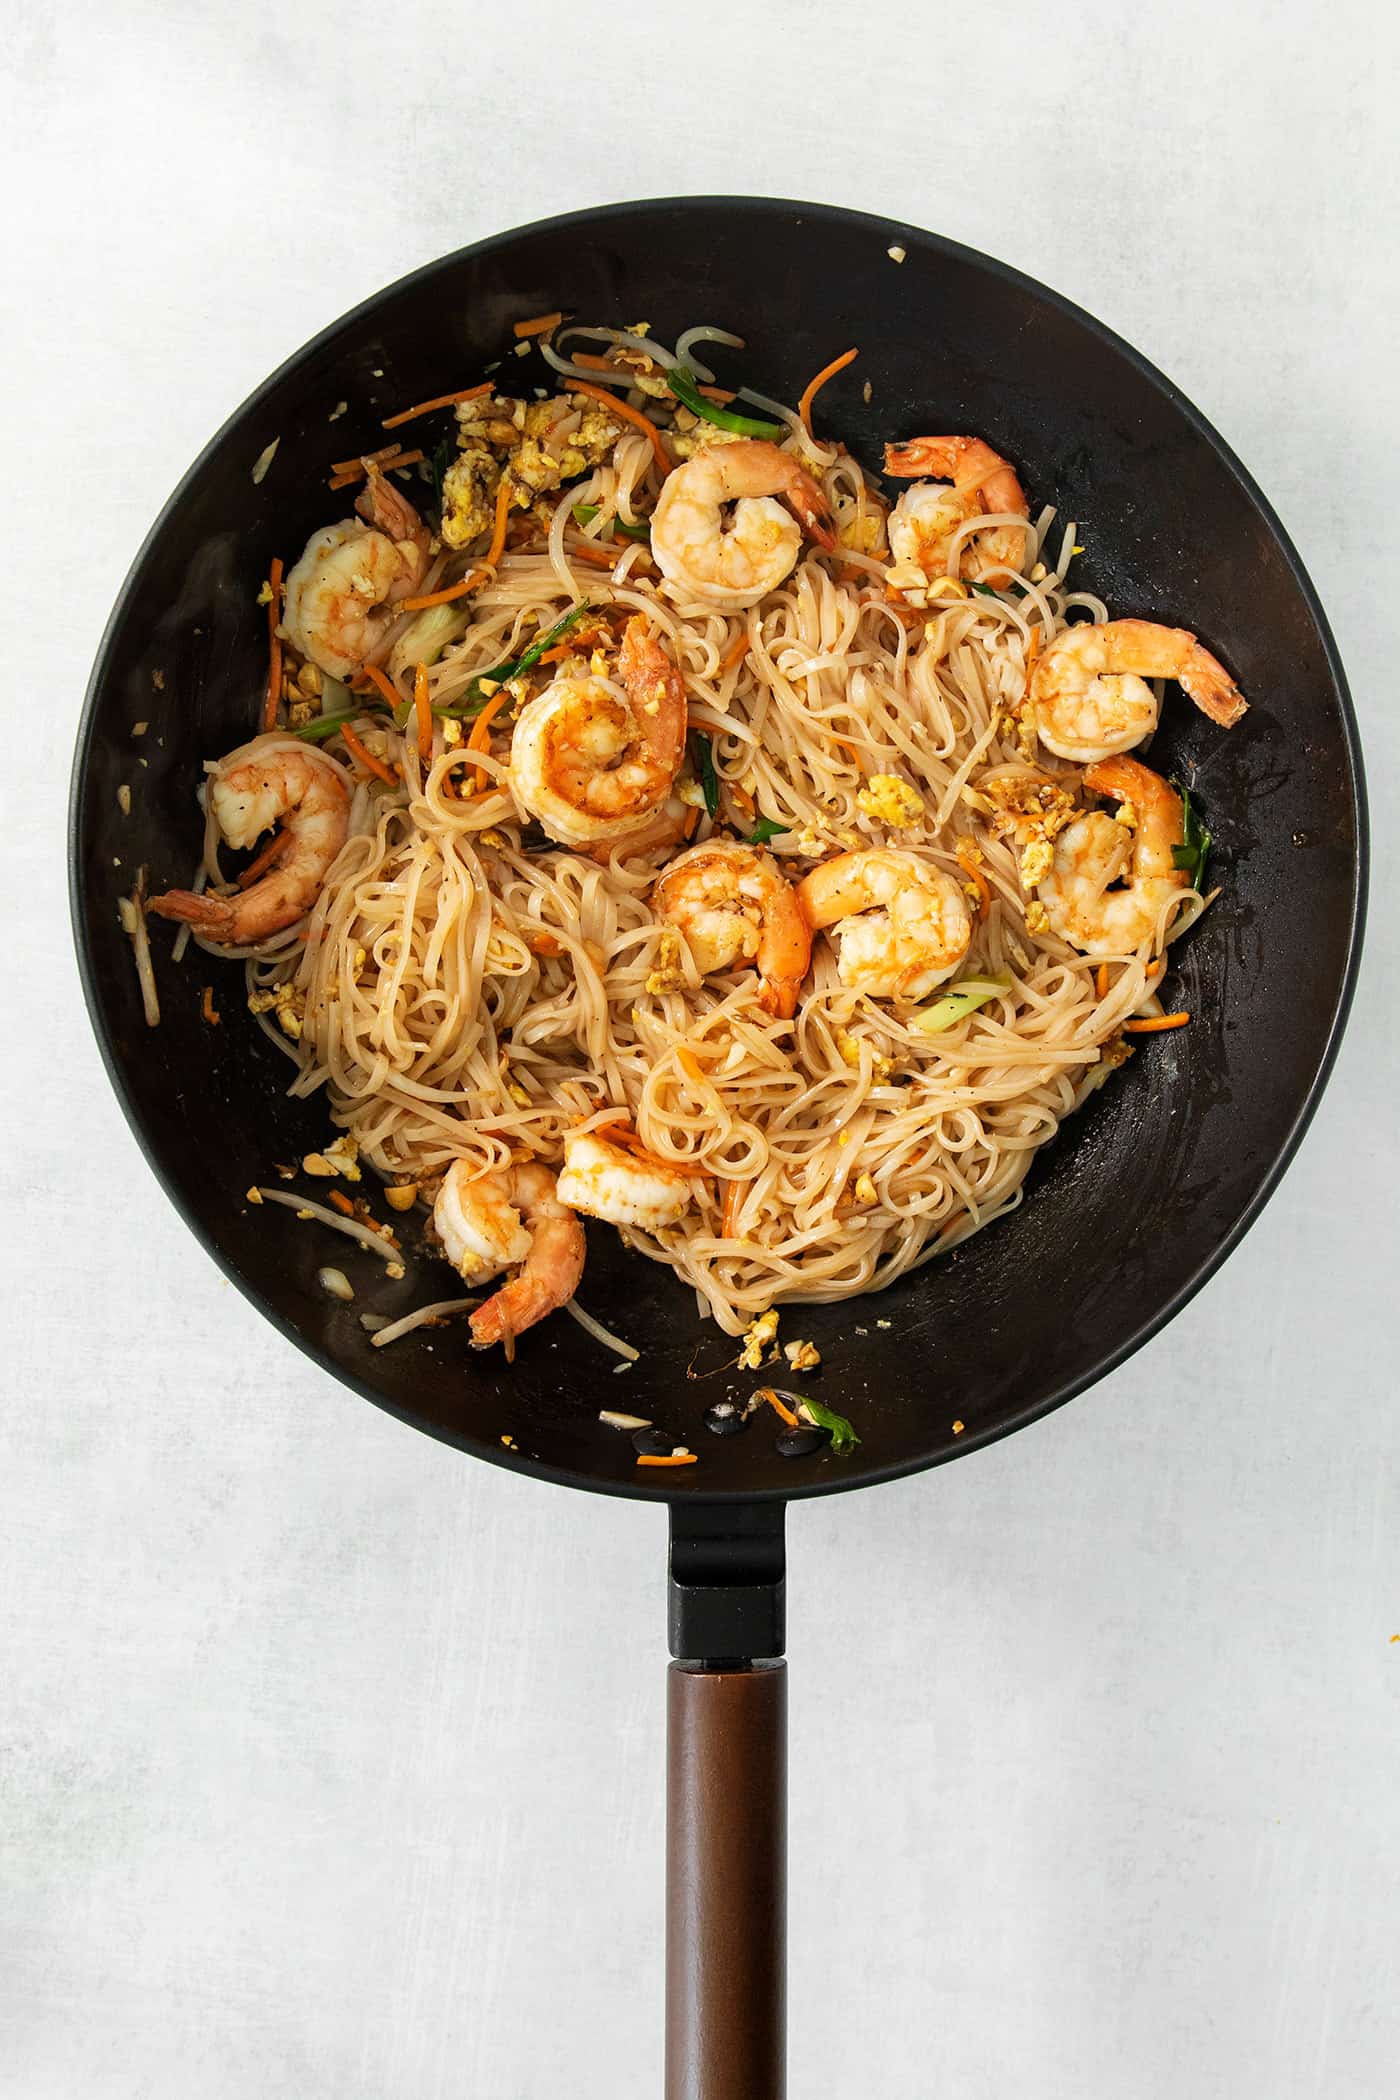 A skillet full of noodles, vegetables, and shrimp for shrimp pad Thai.